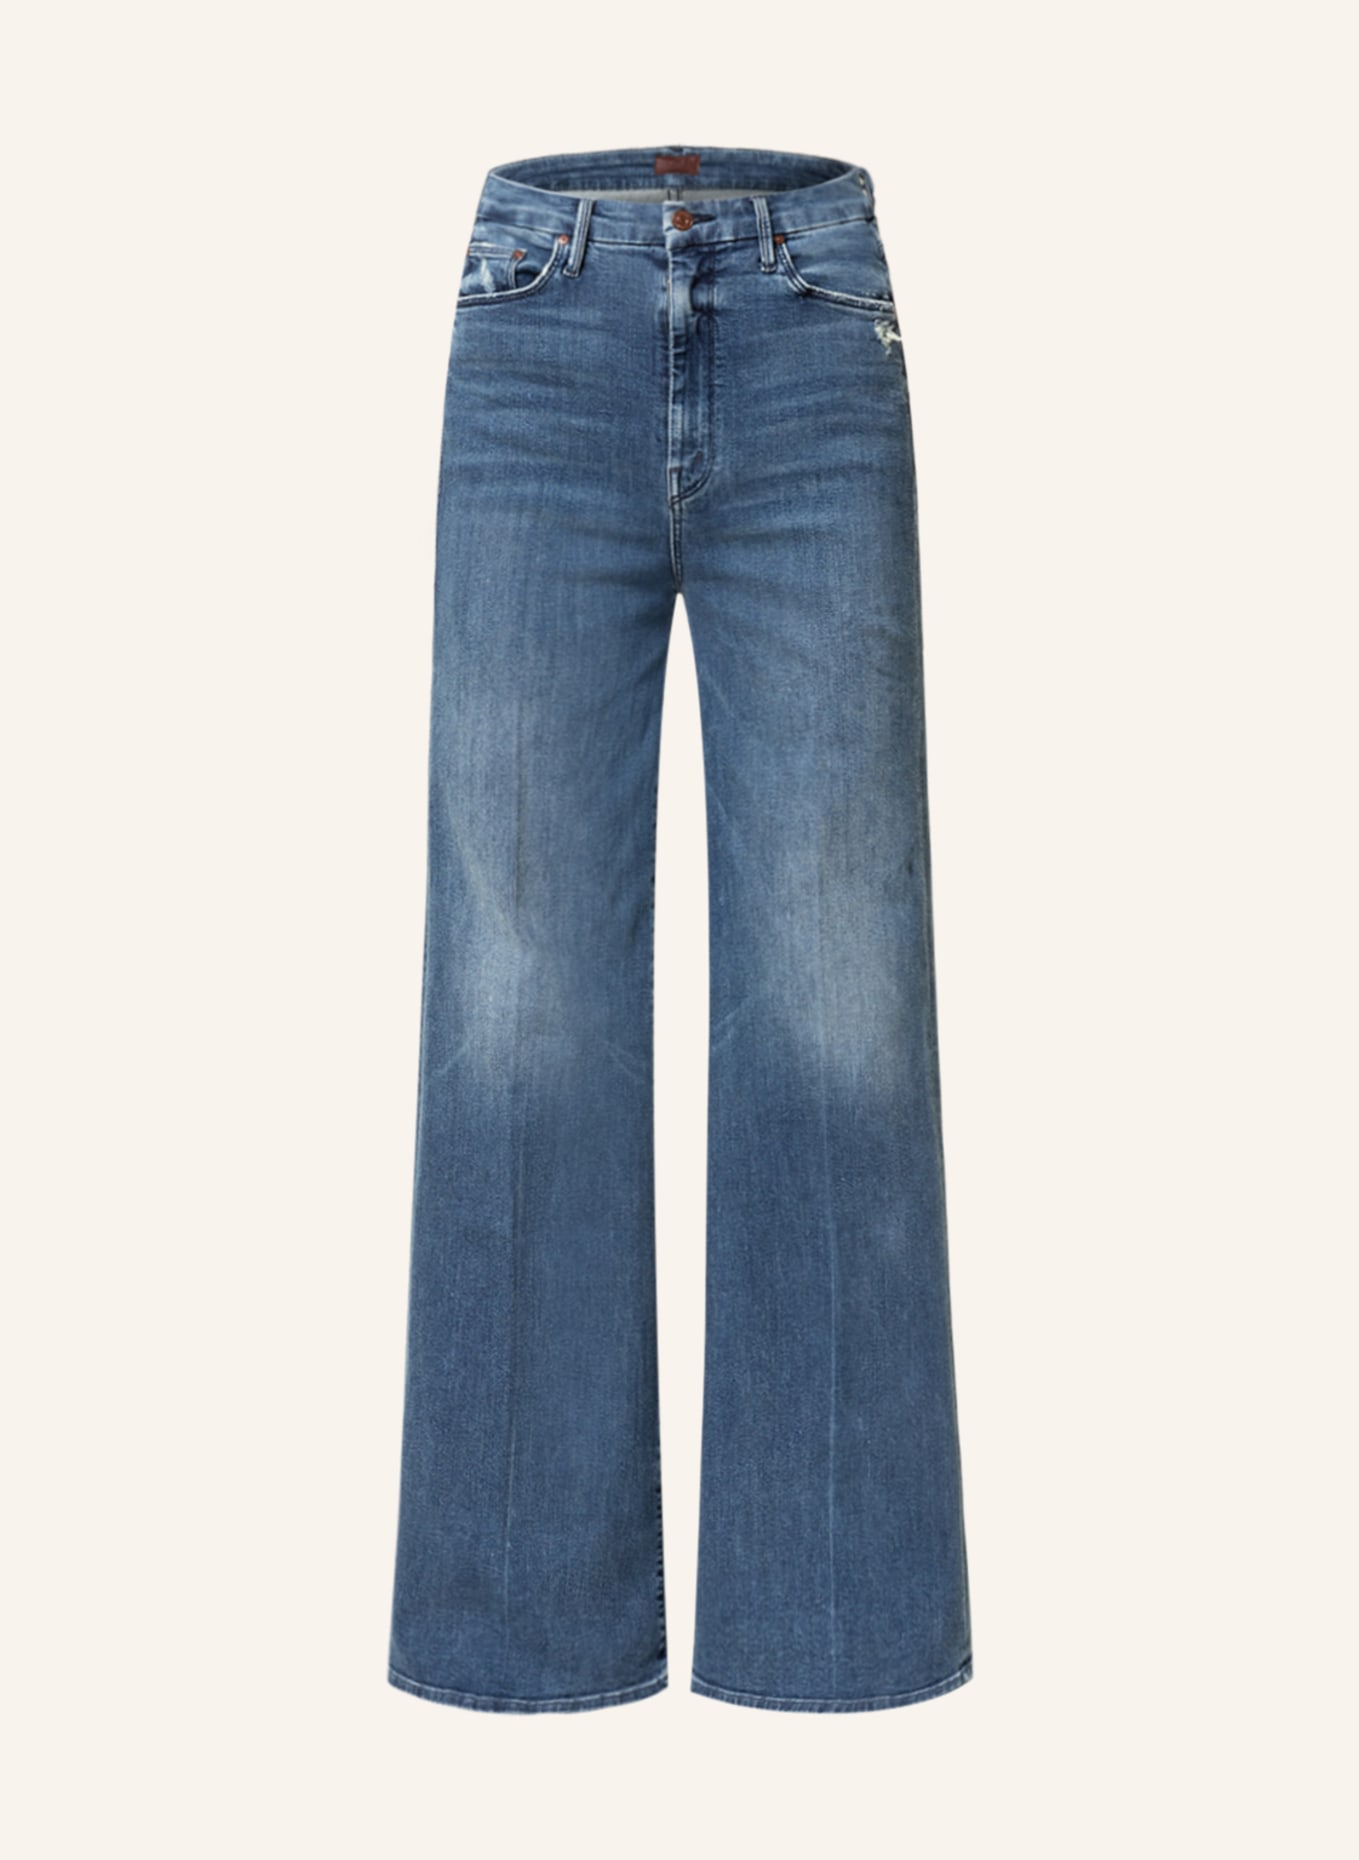 MOTHER Flared Jeans HIGHWAISTED ROLLER, Farbe: OFE dublau denim (Bild 1)